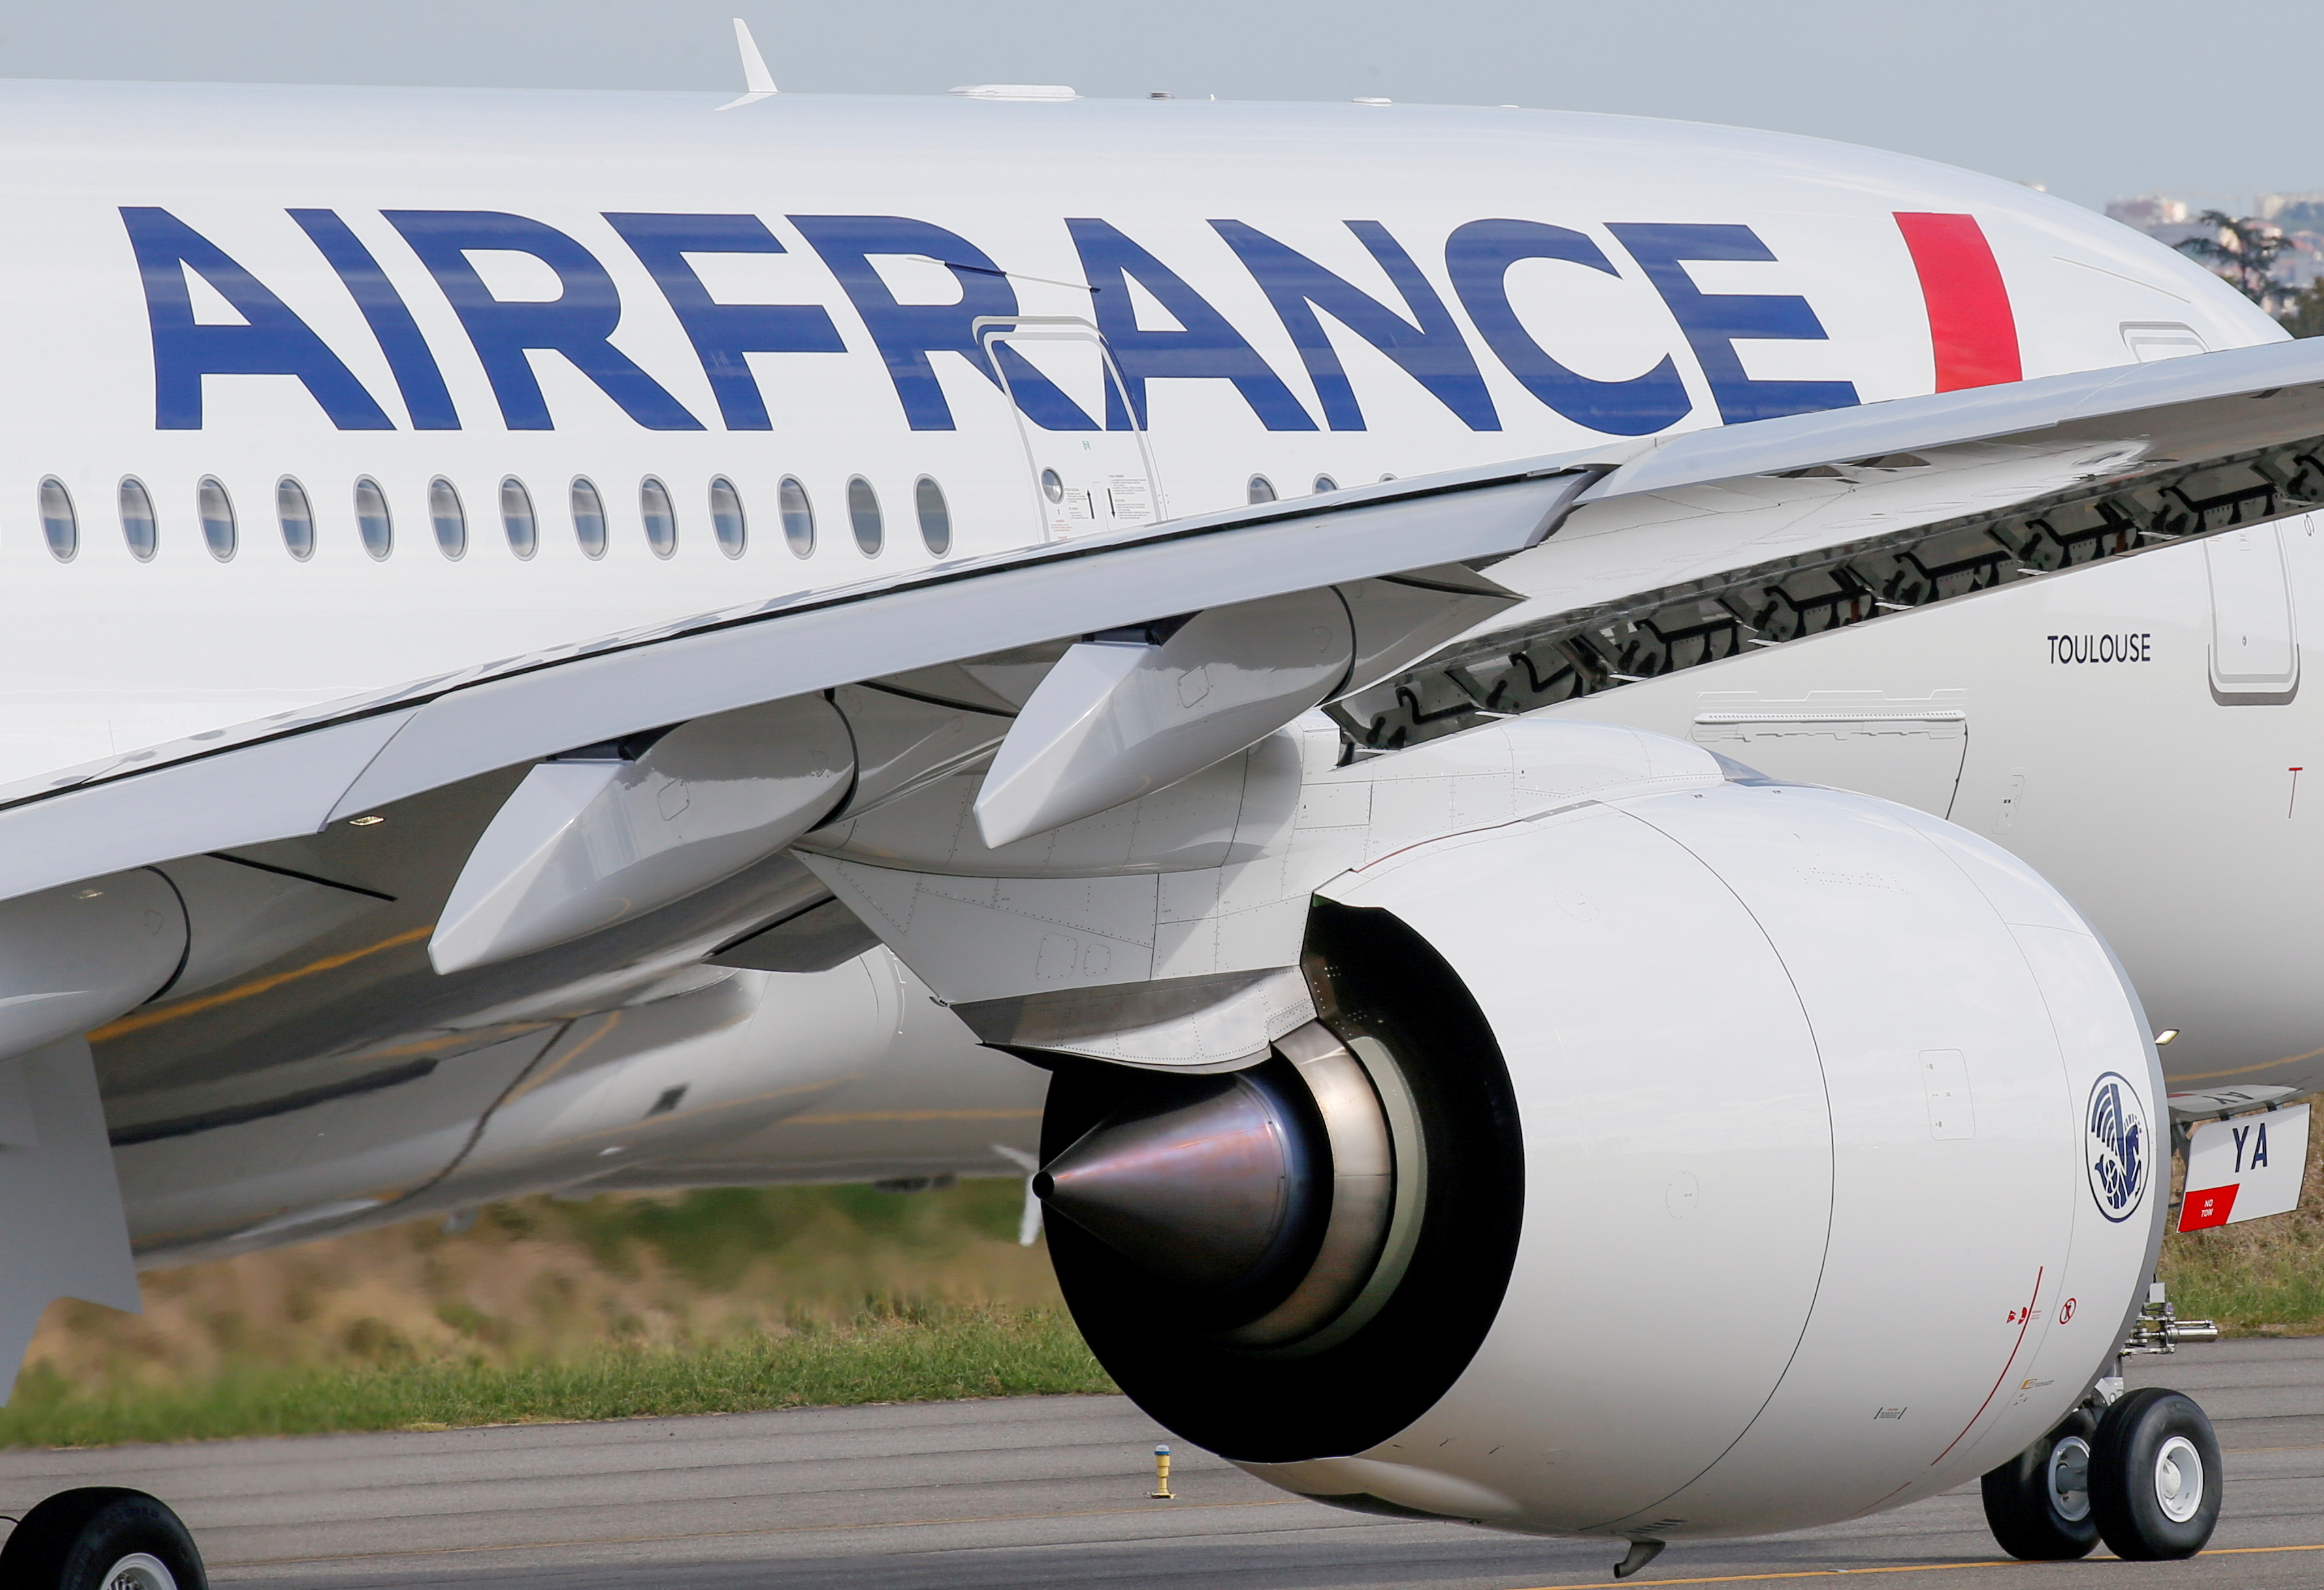 Pass sanitaire: ce que propose Air France pour éviter les files d'attente dans les aéroports